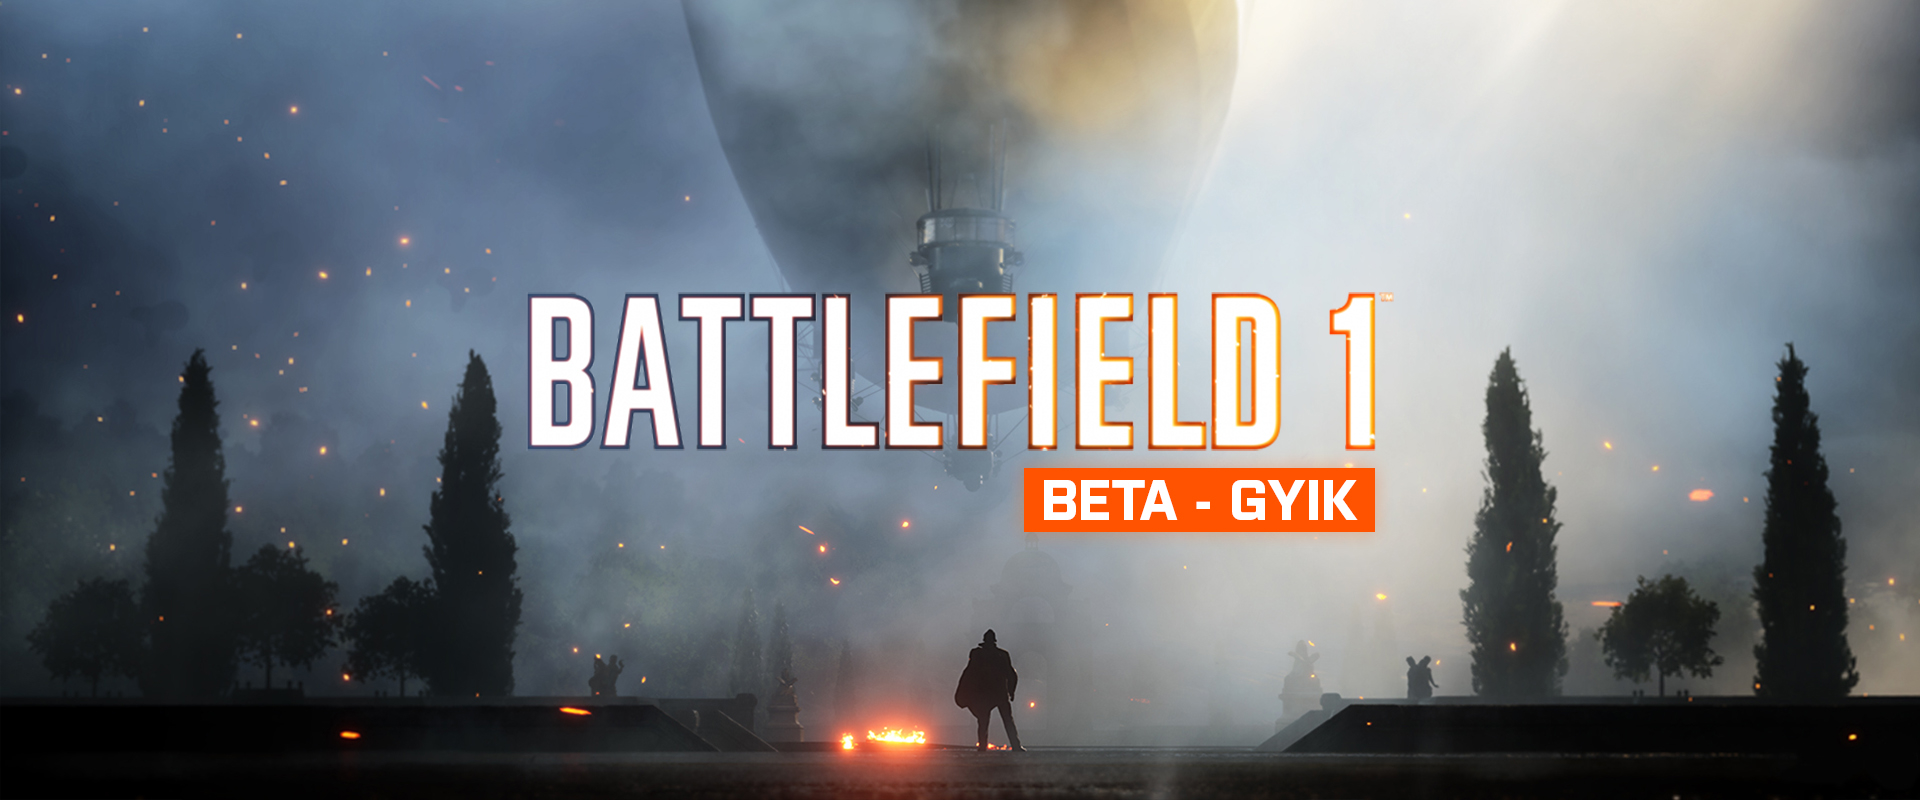 Már tölthető a Battlefield 1 béta, íme minden, amit tudnod kell!